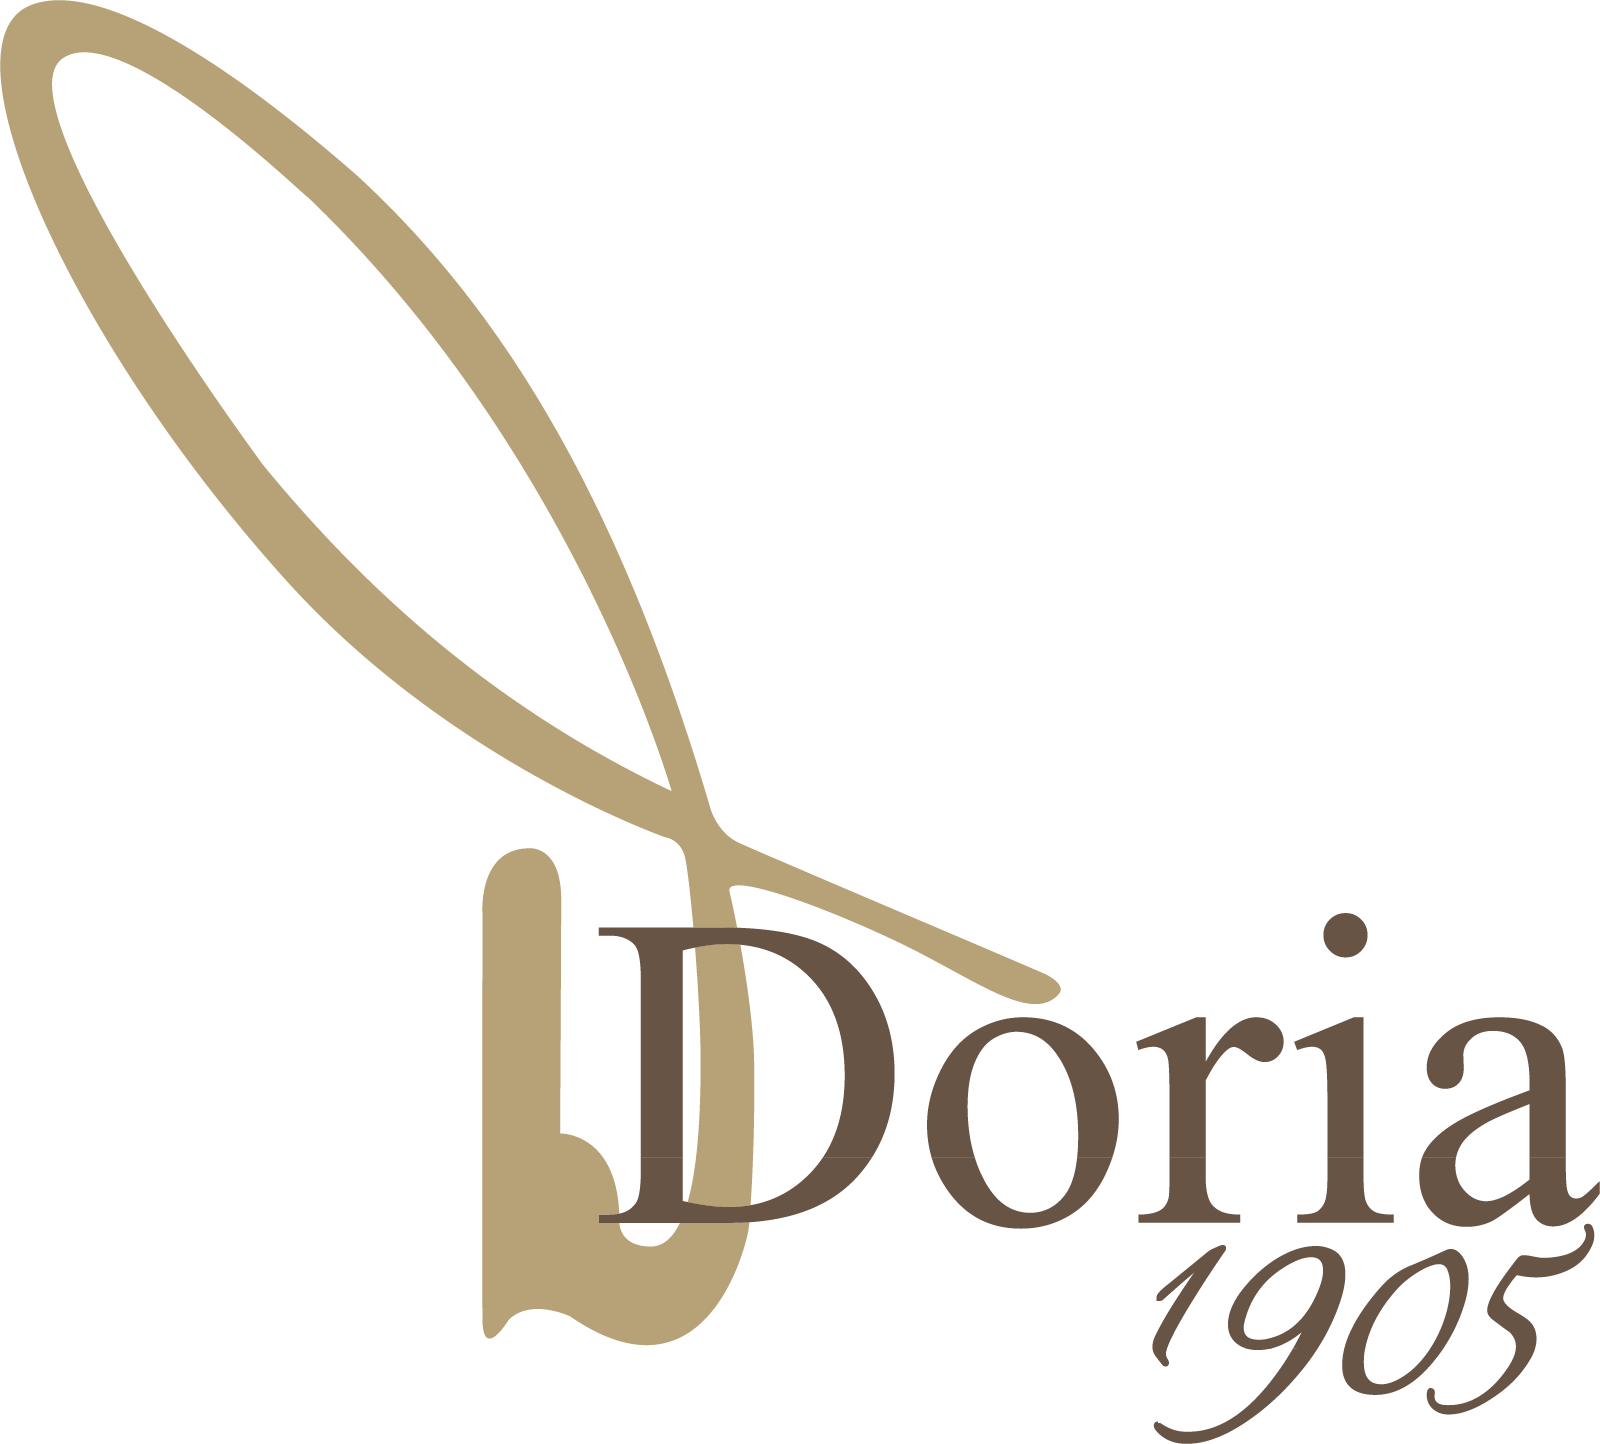 Doria 1905